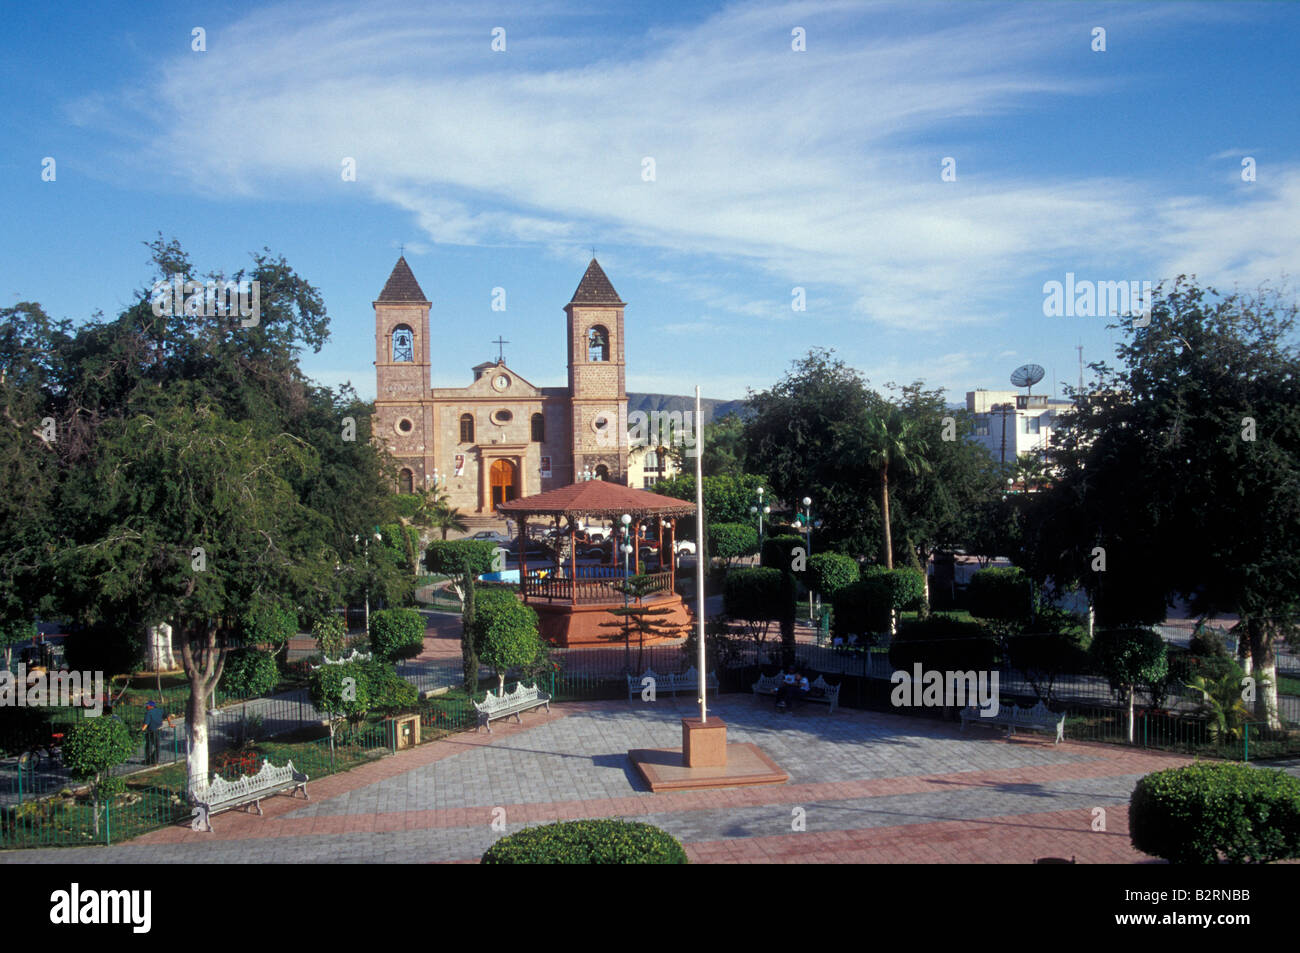 The main square and Catedral de Nuestra Senora de la Paz cathedral in the city of La Paz, Baja California Sur, Mexico Stock Photo